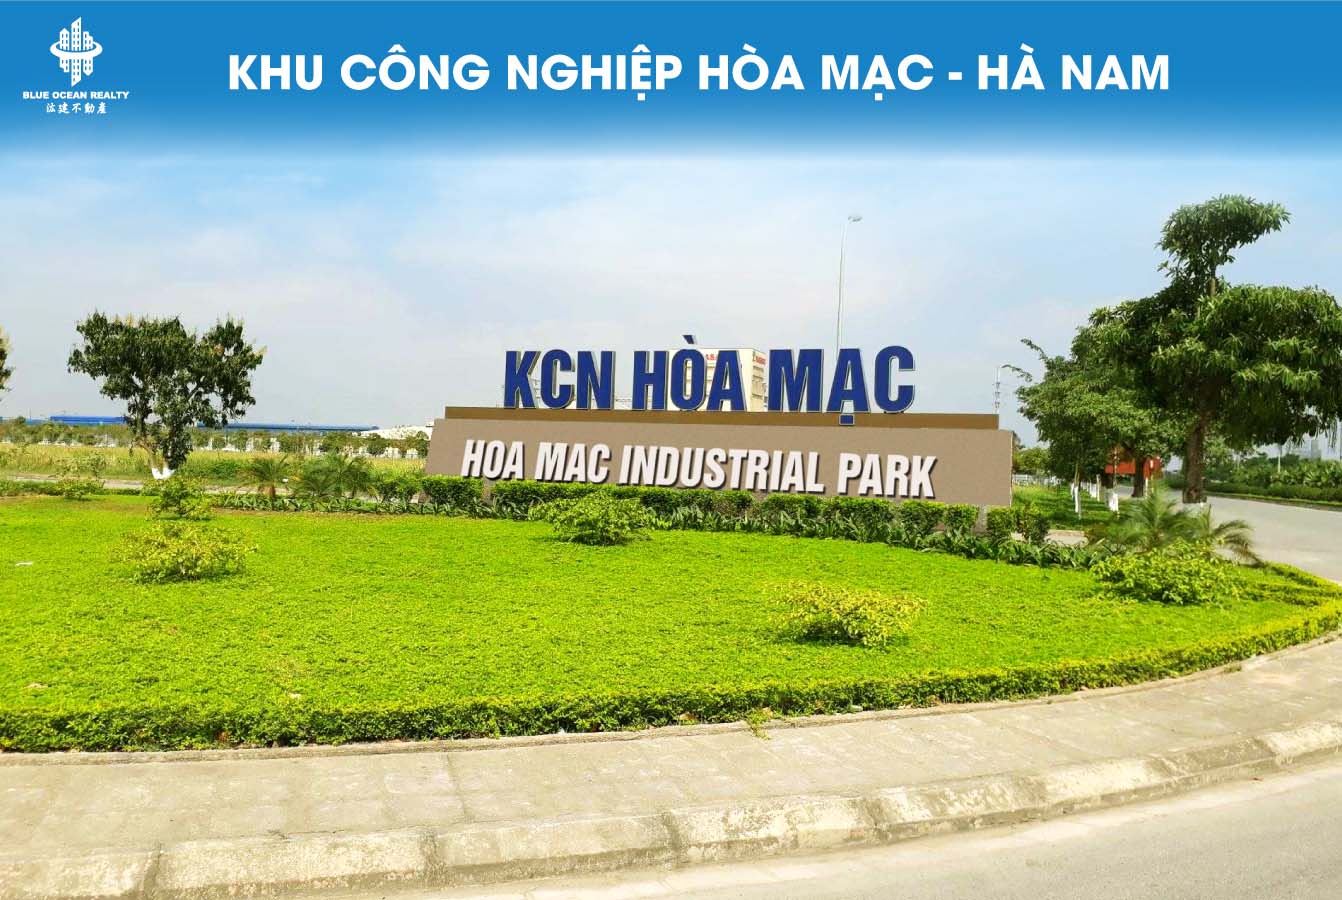 Khu công nghiệp (KCN) Hòa Mạc tỉnh Hà Nam